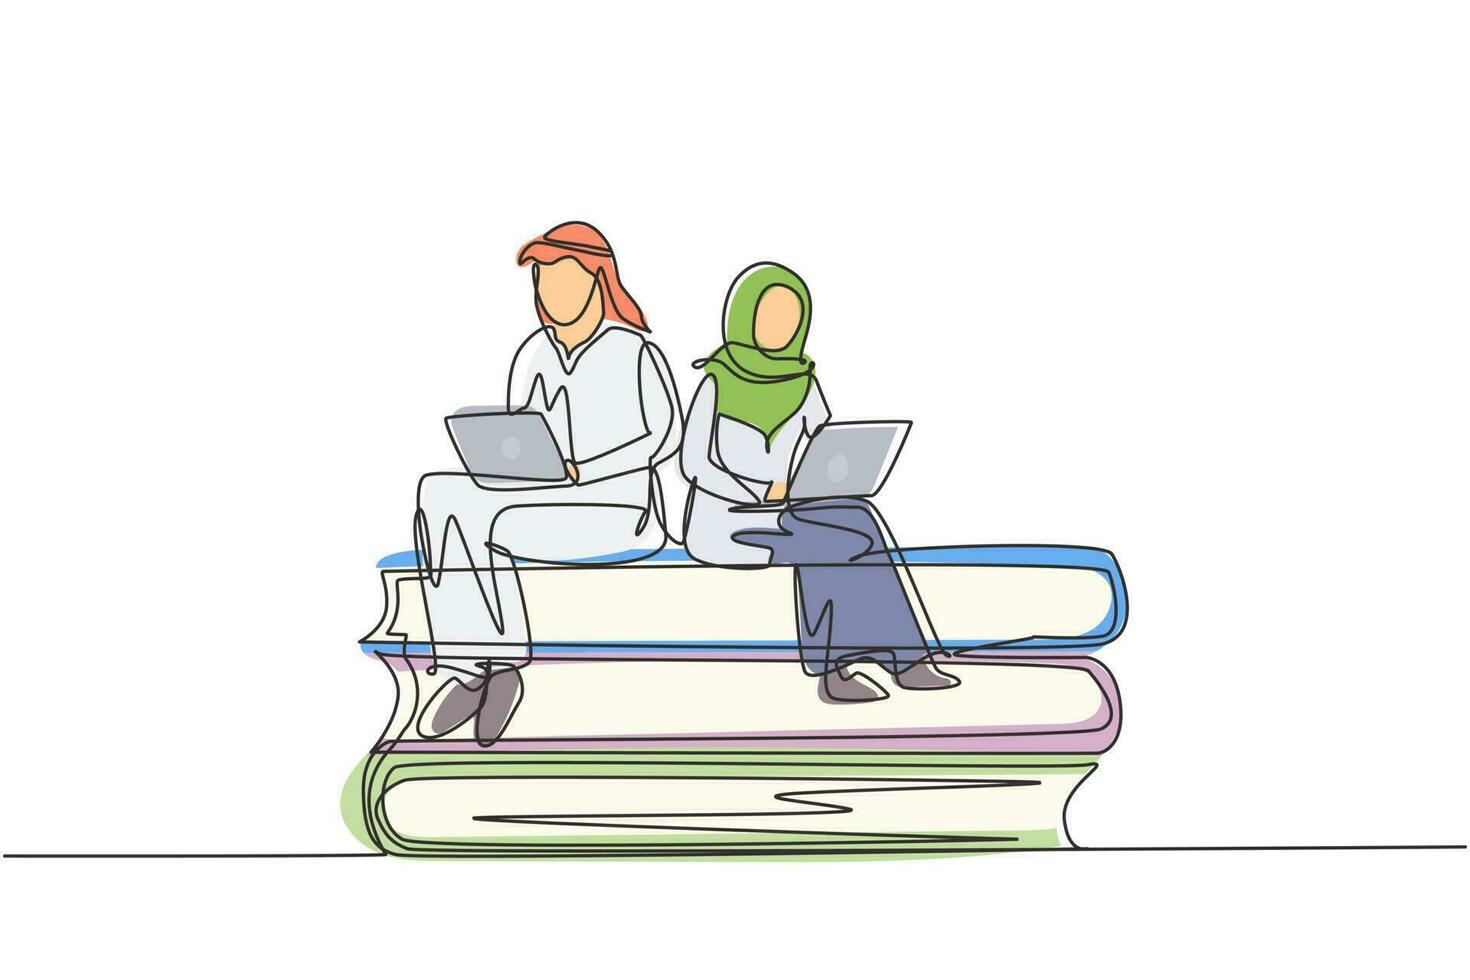 enkele doorlopende lijntekening Arabisch koppel met laptop zittend op stapel boeken samen. freelance, afstandsonderwijs, online cursussen, studeren. een lijn tekenen grafisch ontwerp vectorillustratie vector